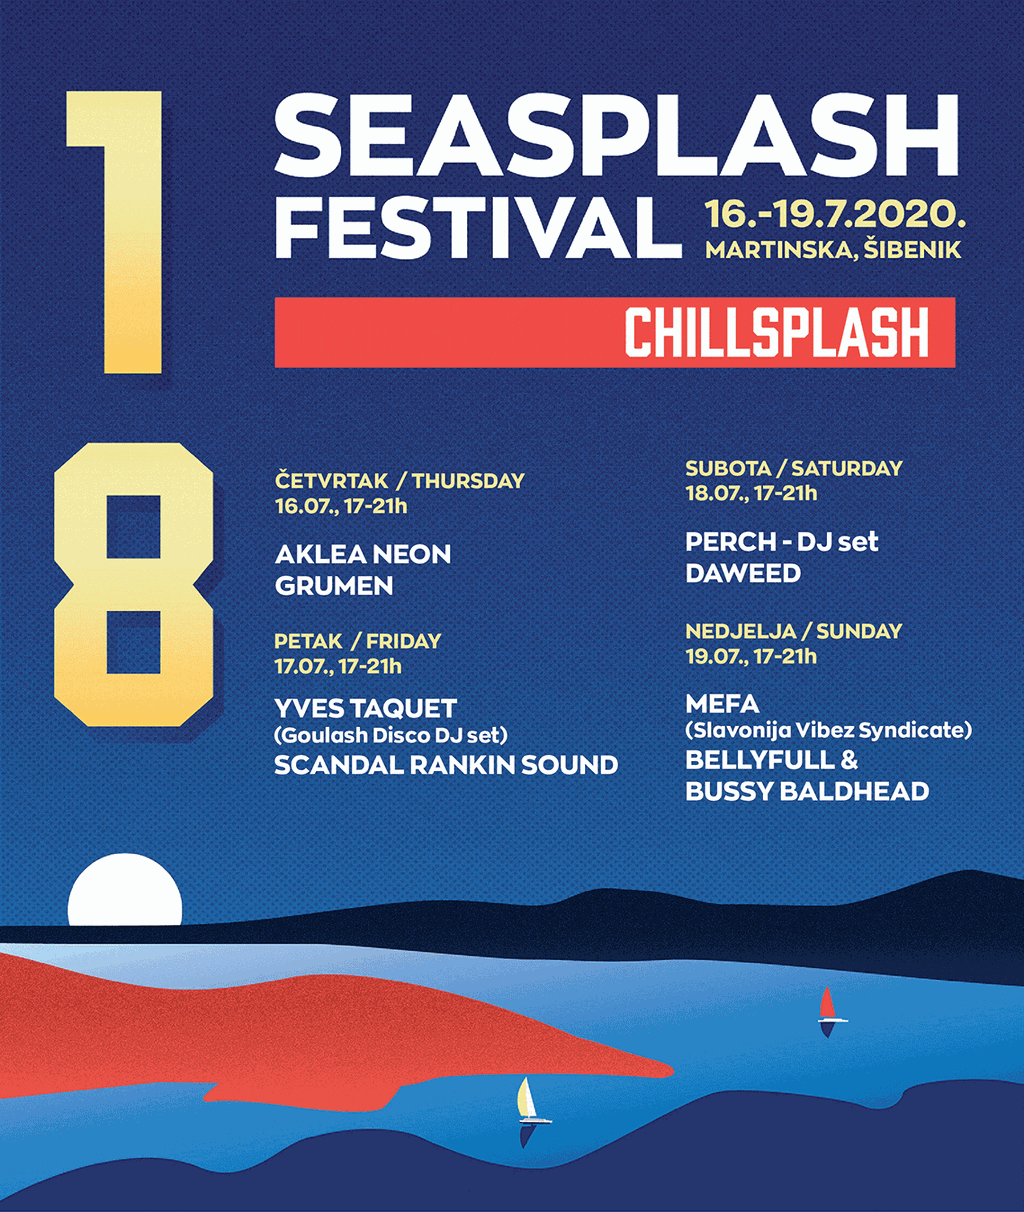 Seasplash festival - Chillsplash